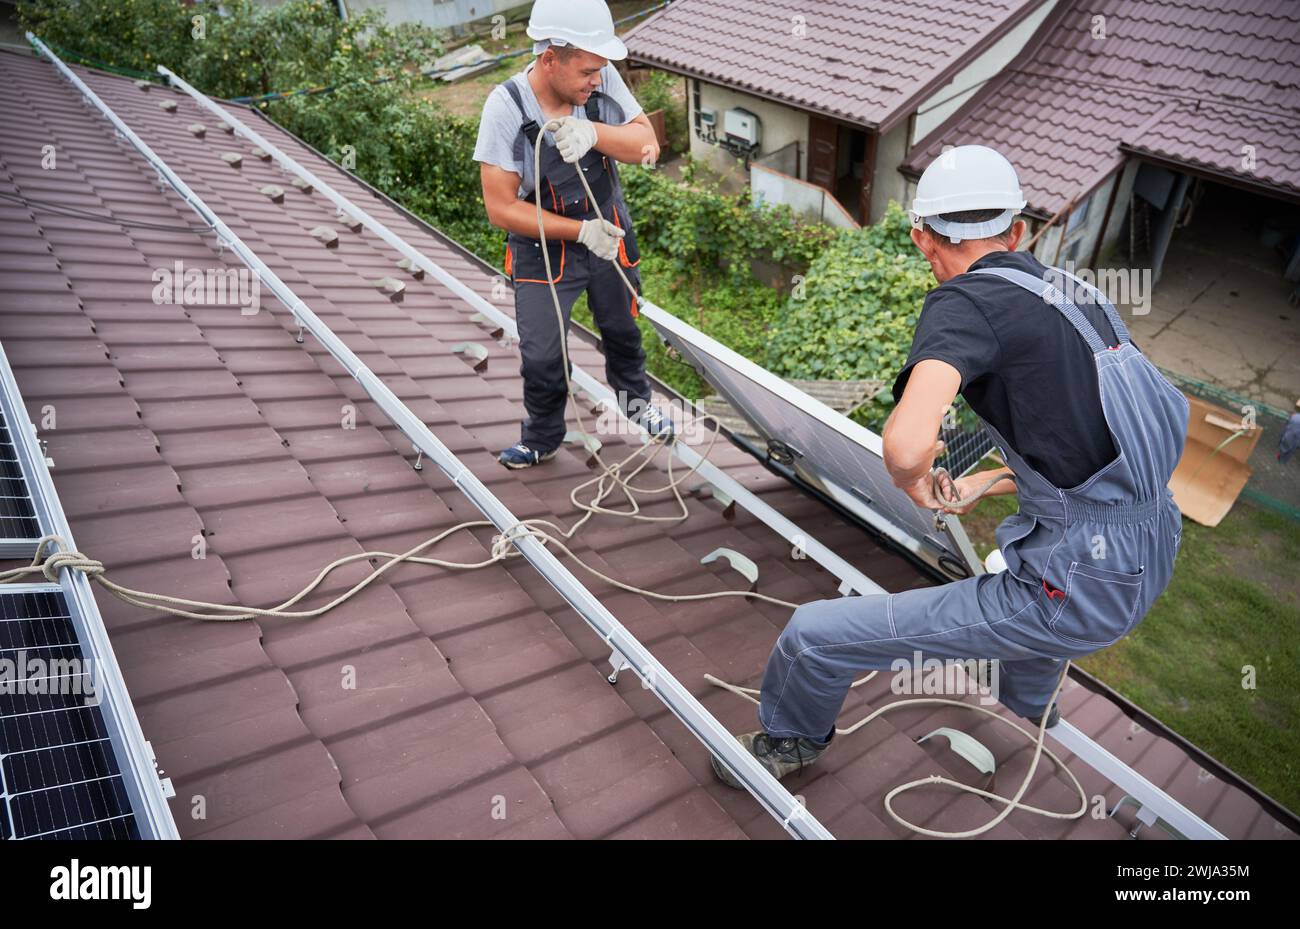 Hommes installateurs soulevant des modules solaires photovoltaïques sur le toit de la maison. Électriciens dans les casques installant le système de panneau solaire à l'extérieur. Concept d'énergie alternative et renouvelable. Banque D'Images